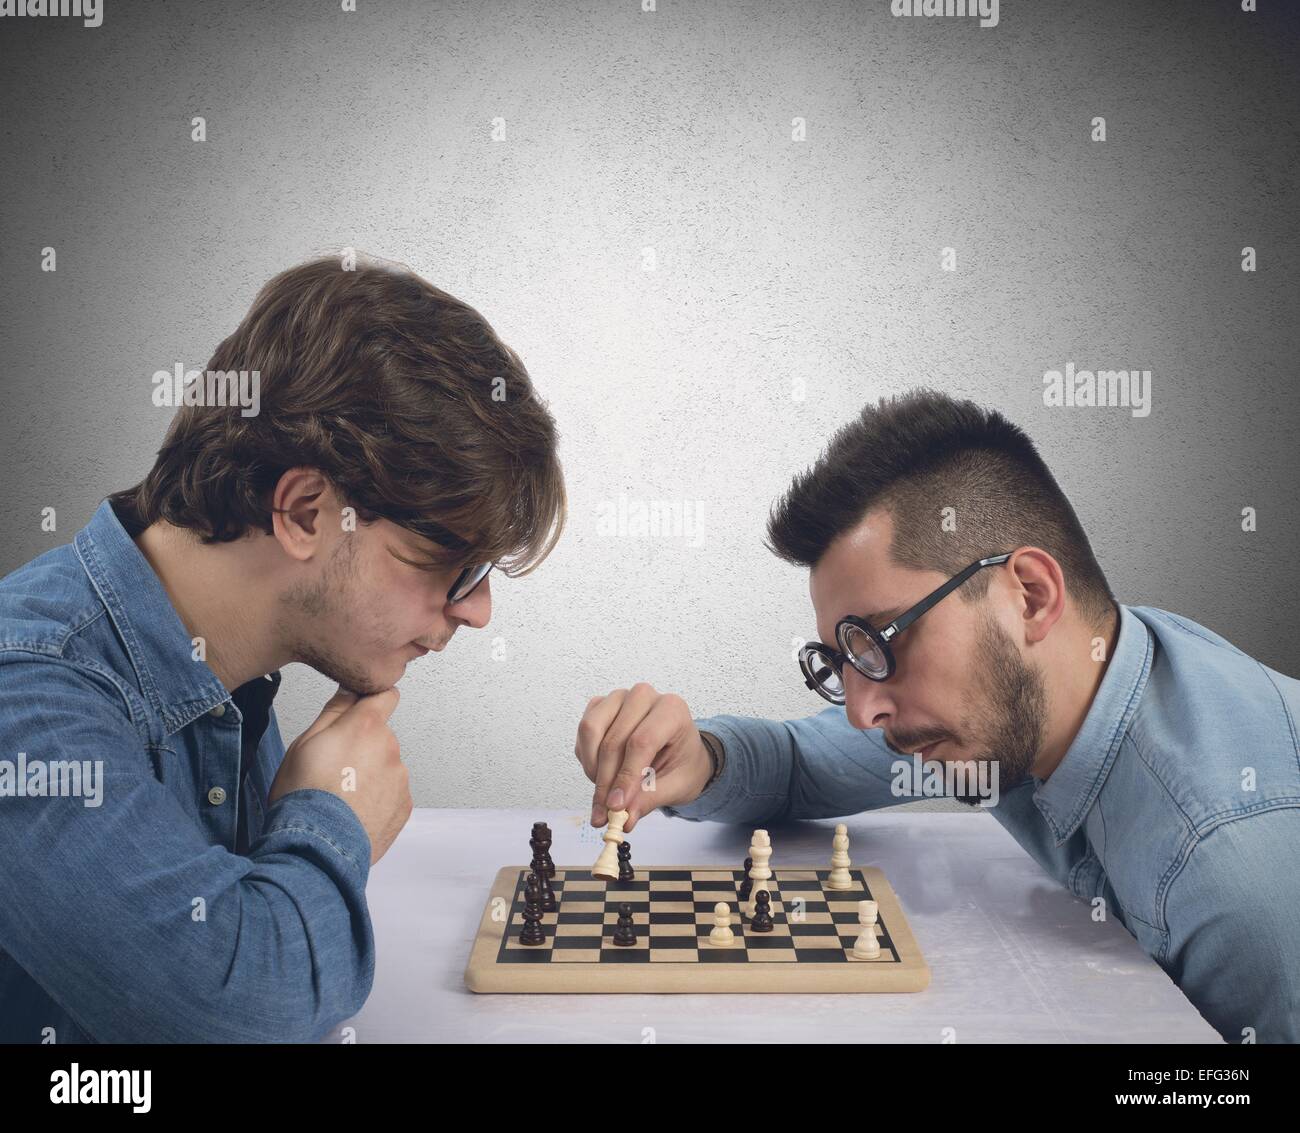 Chess Stock Photo